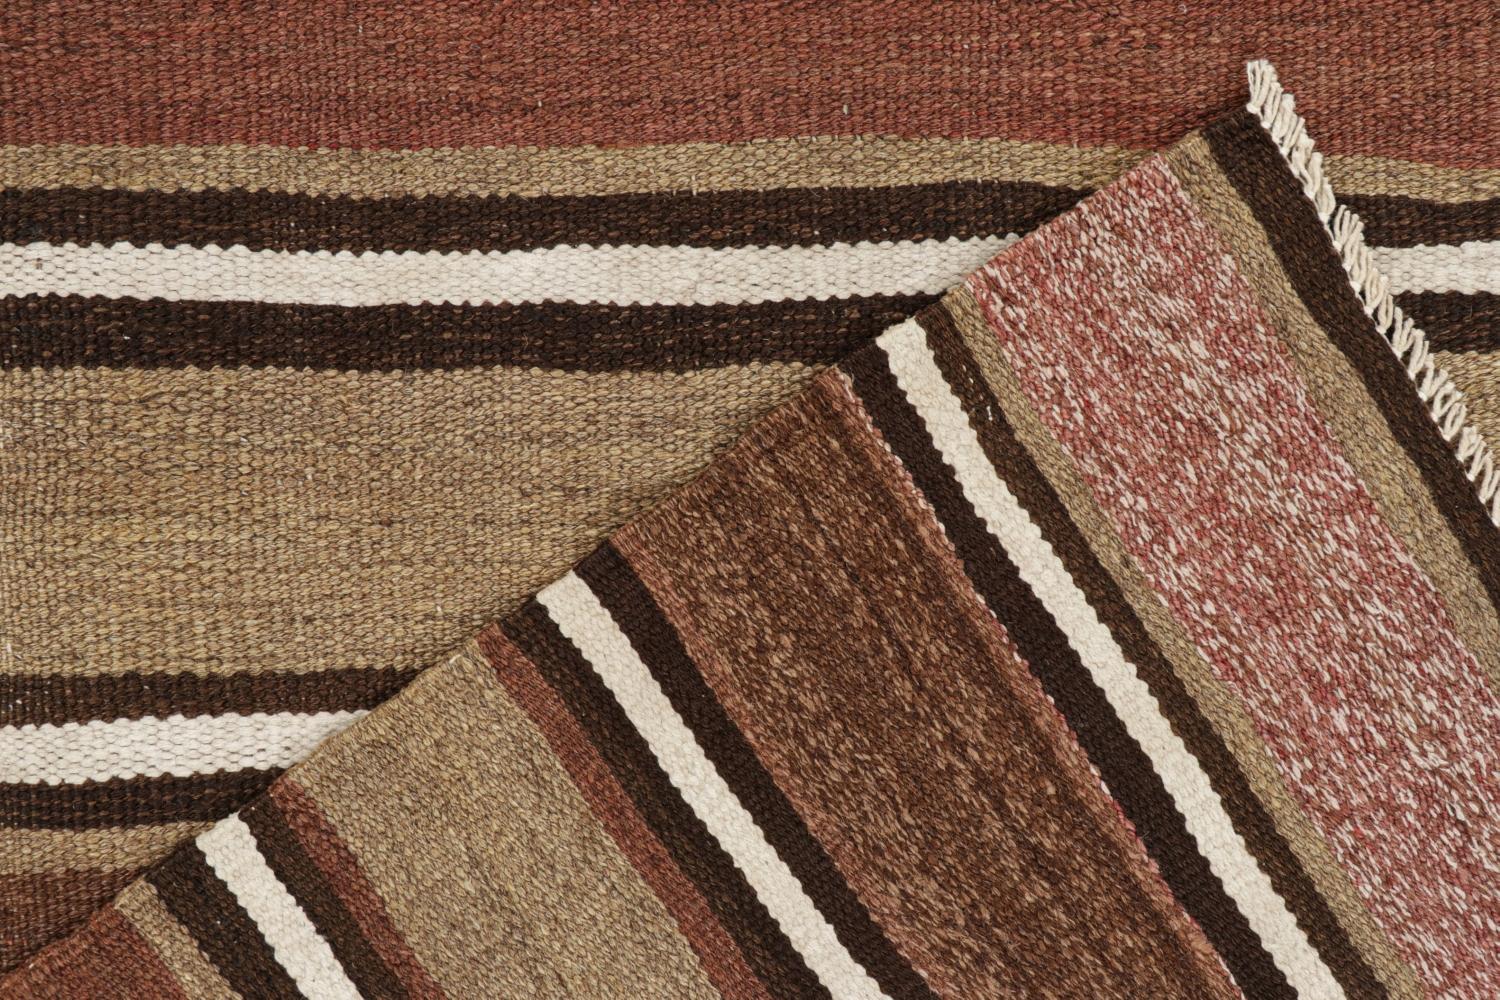 Wool Vintage Shahsavan Persian Kilim in Beige-Brown & White Stripes For Sale